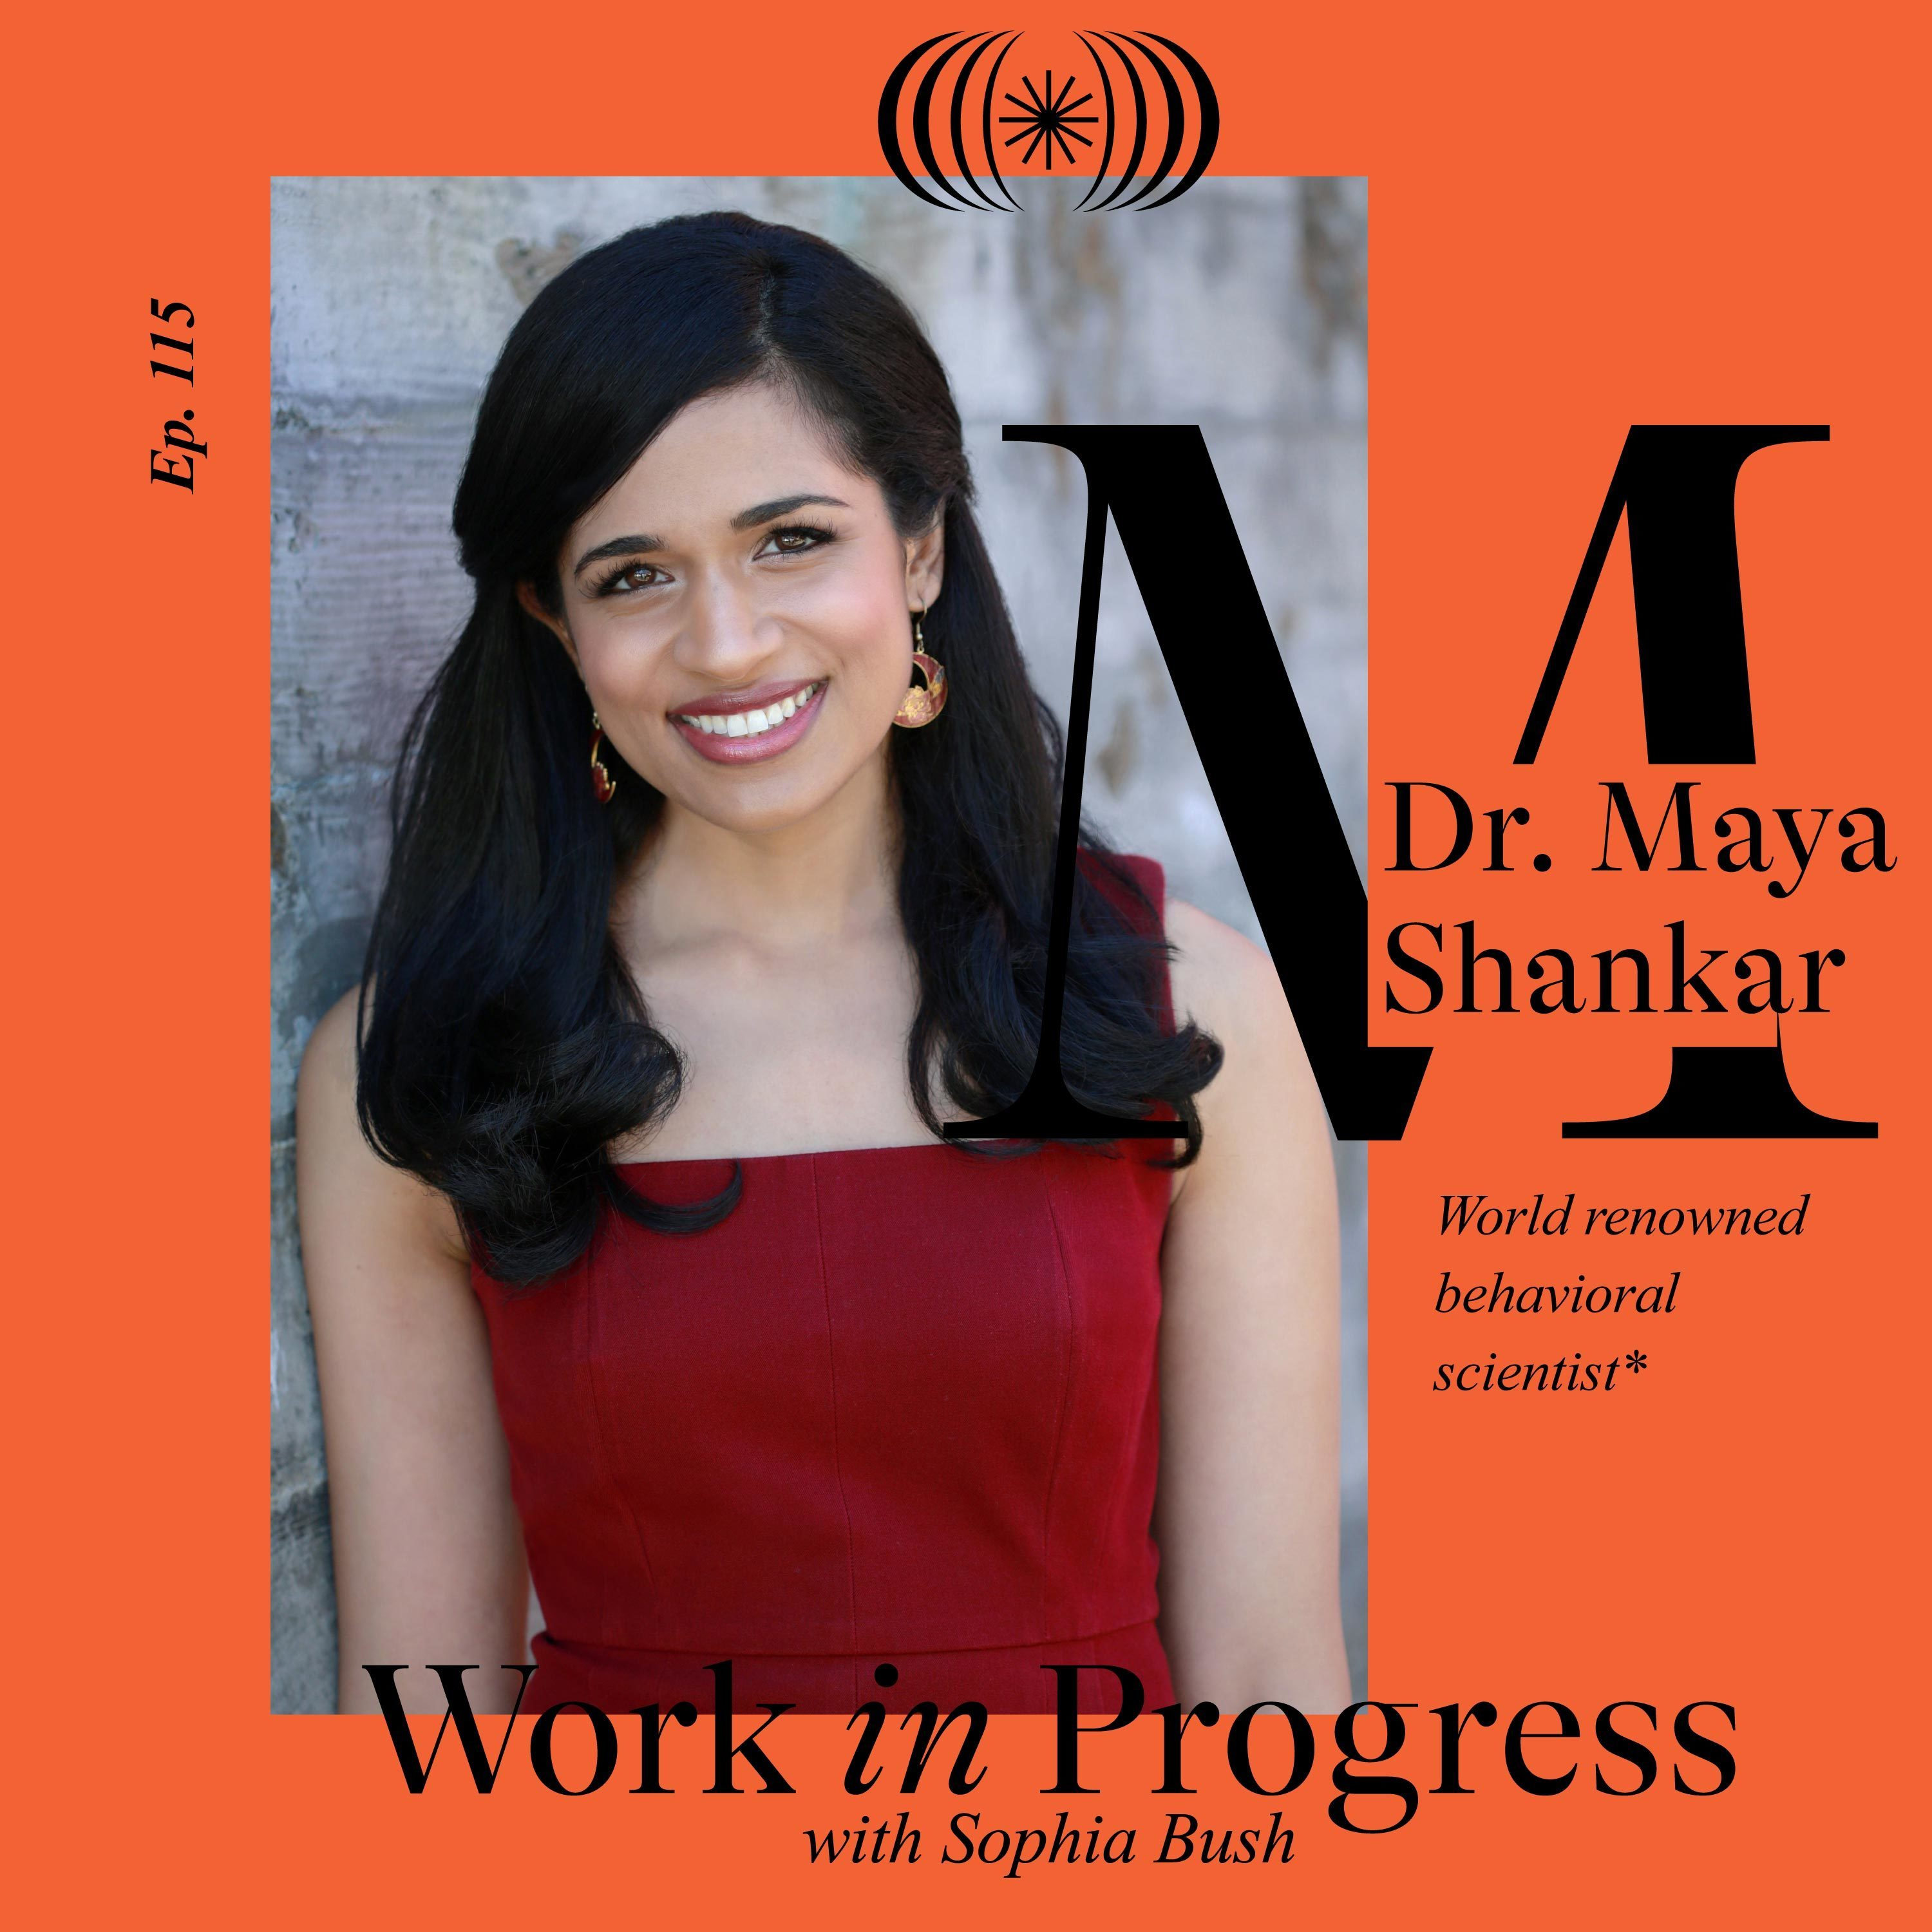 Dr. Maya Shankar